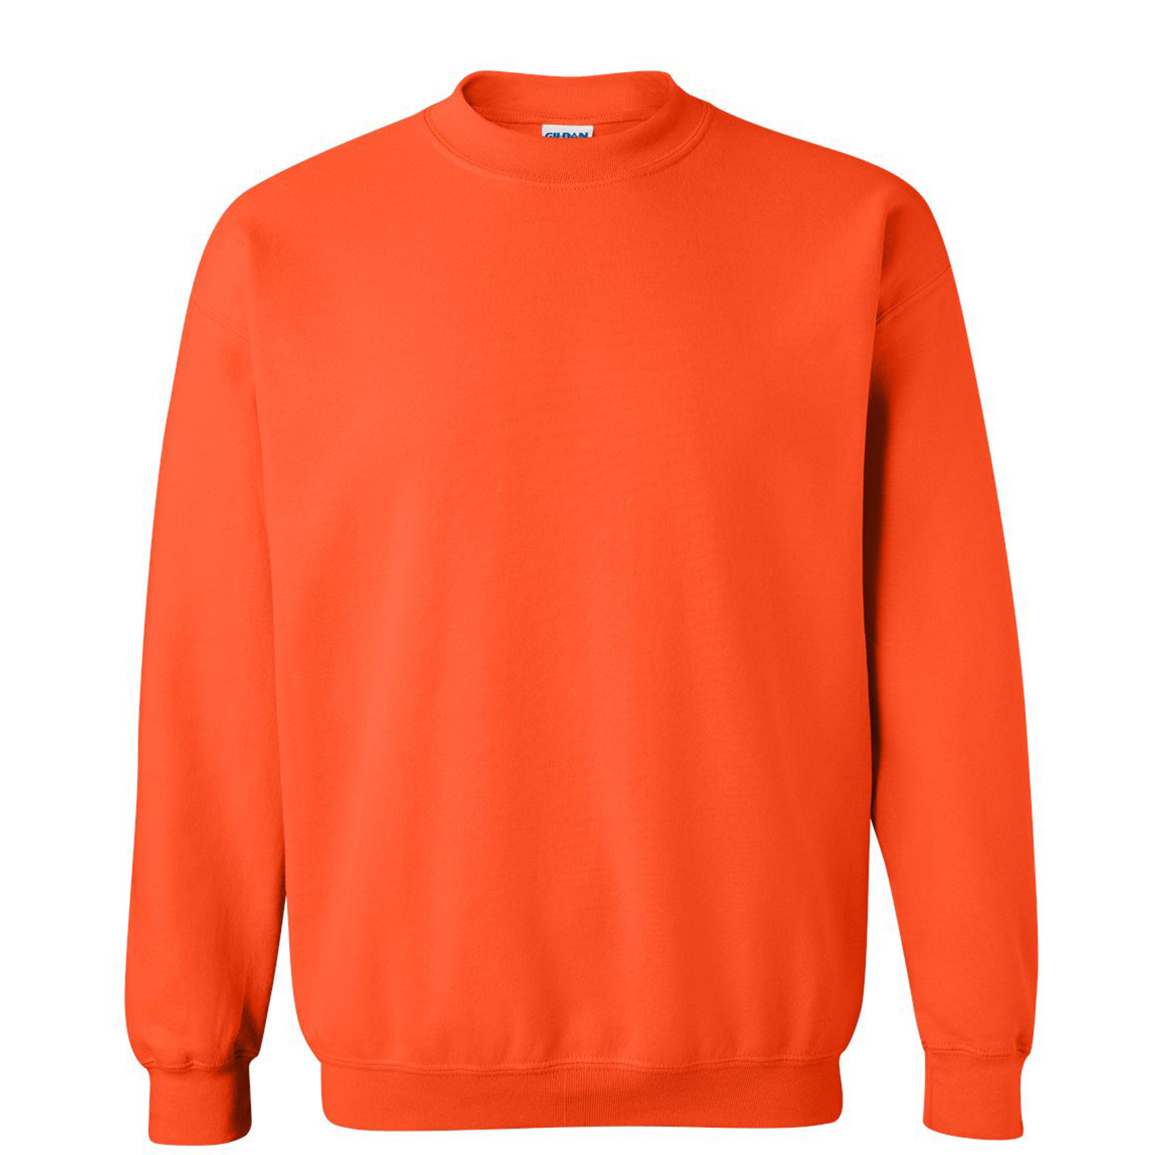 Product - Sweatshirt | ooShirts